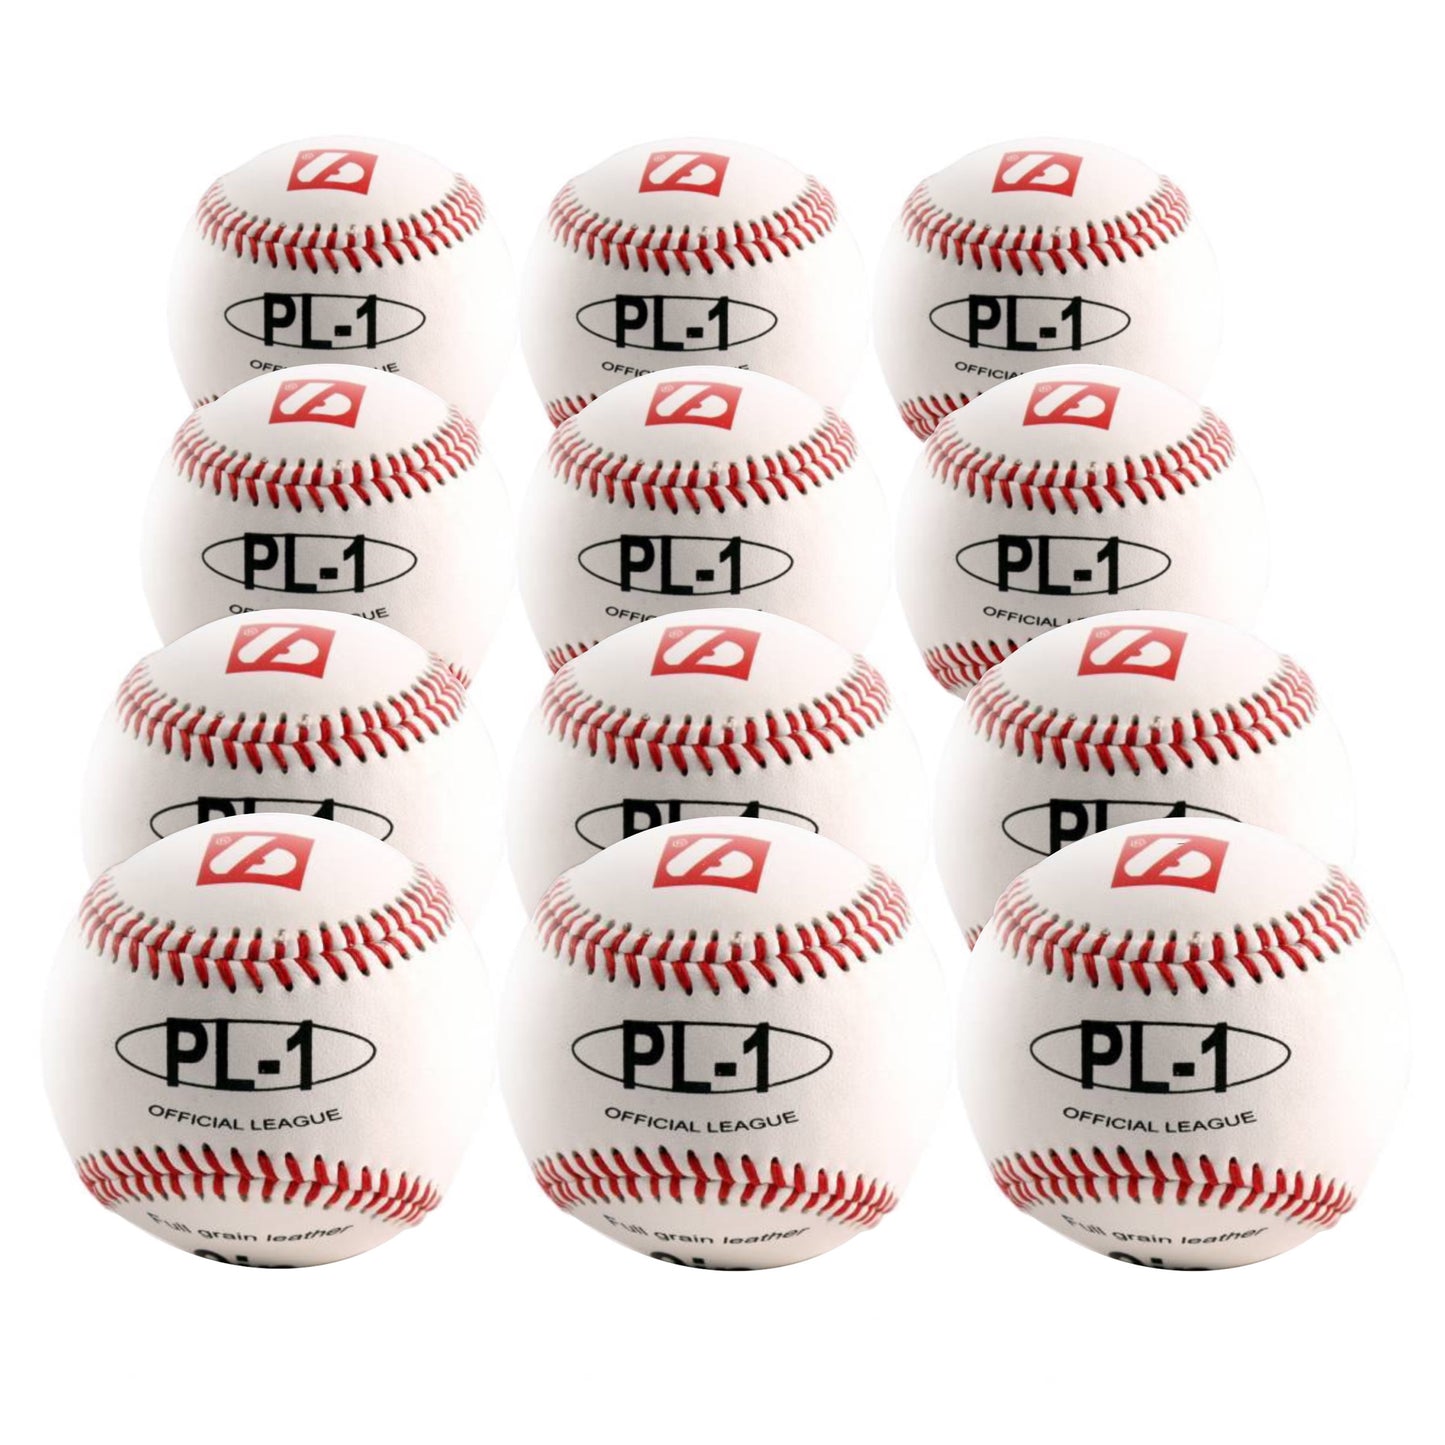 PL-1 Elite match baseballs, Size 9" White, 1 dozen